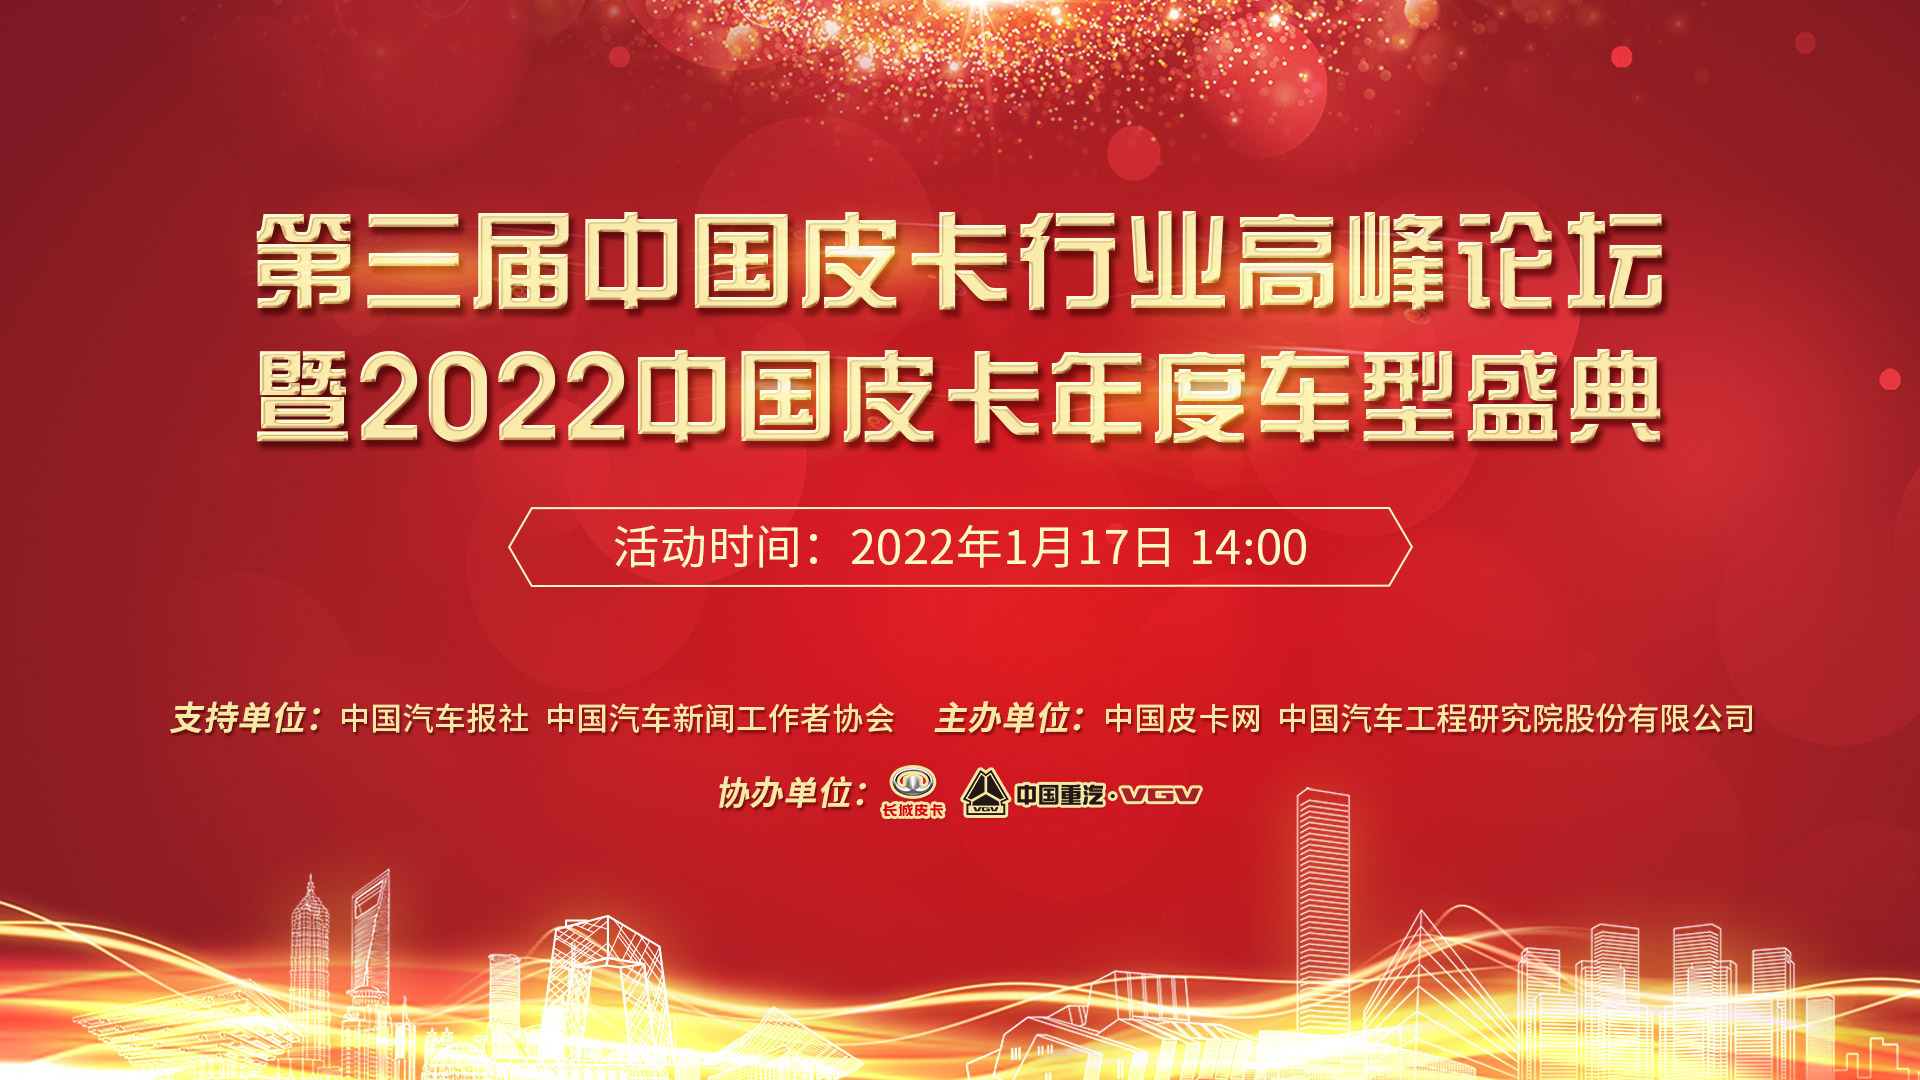 第三届中国皮卡行业高峰论坛暨2022中国皮卡年度车型盛典